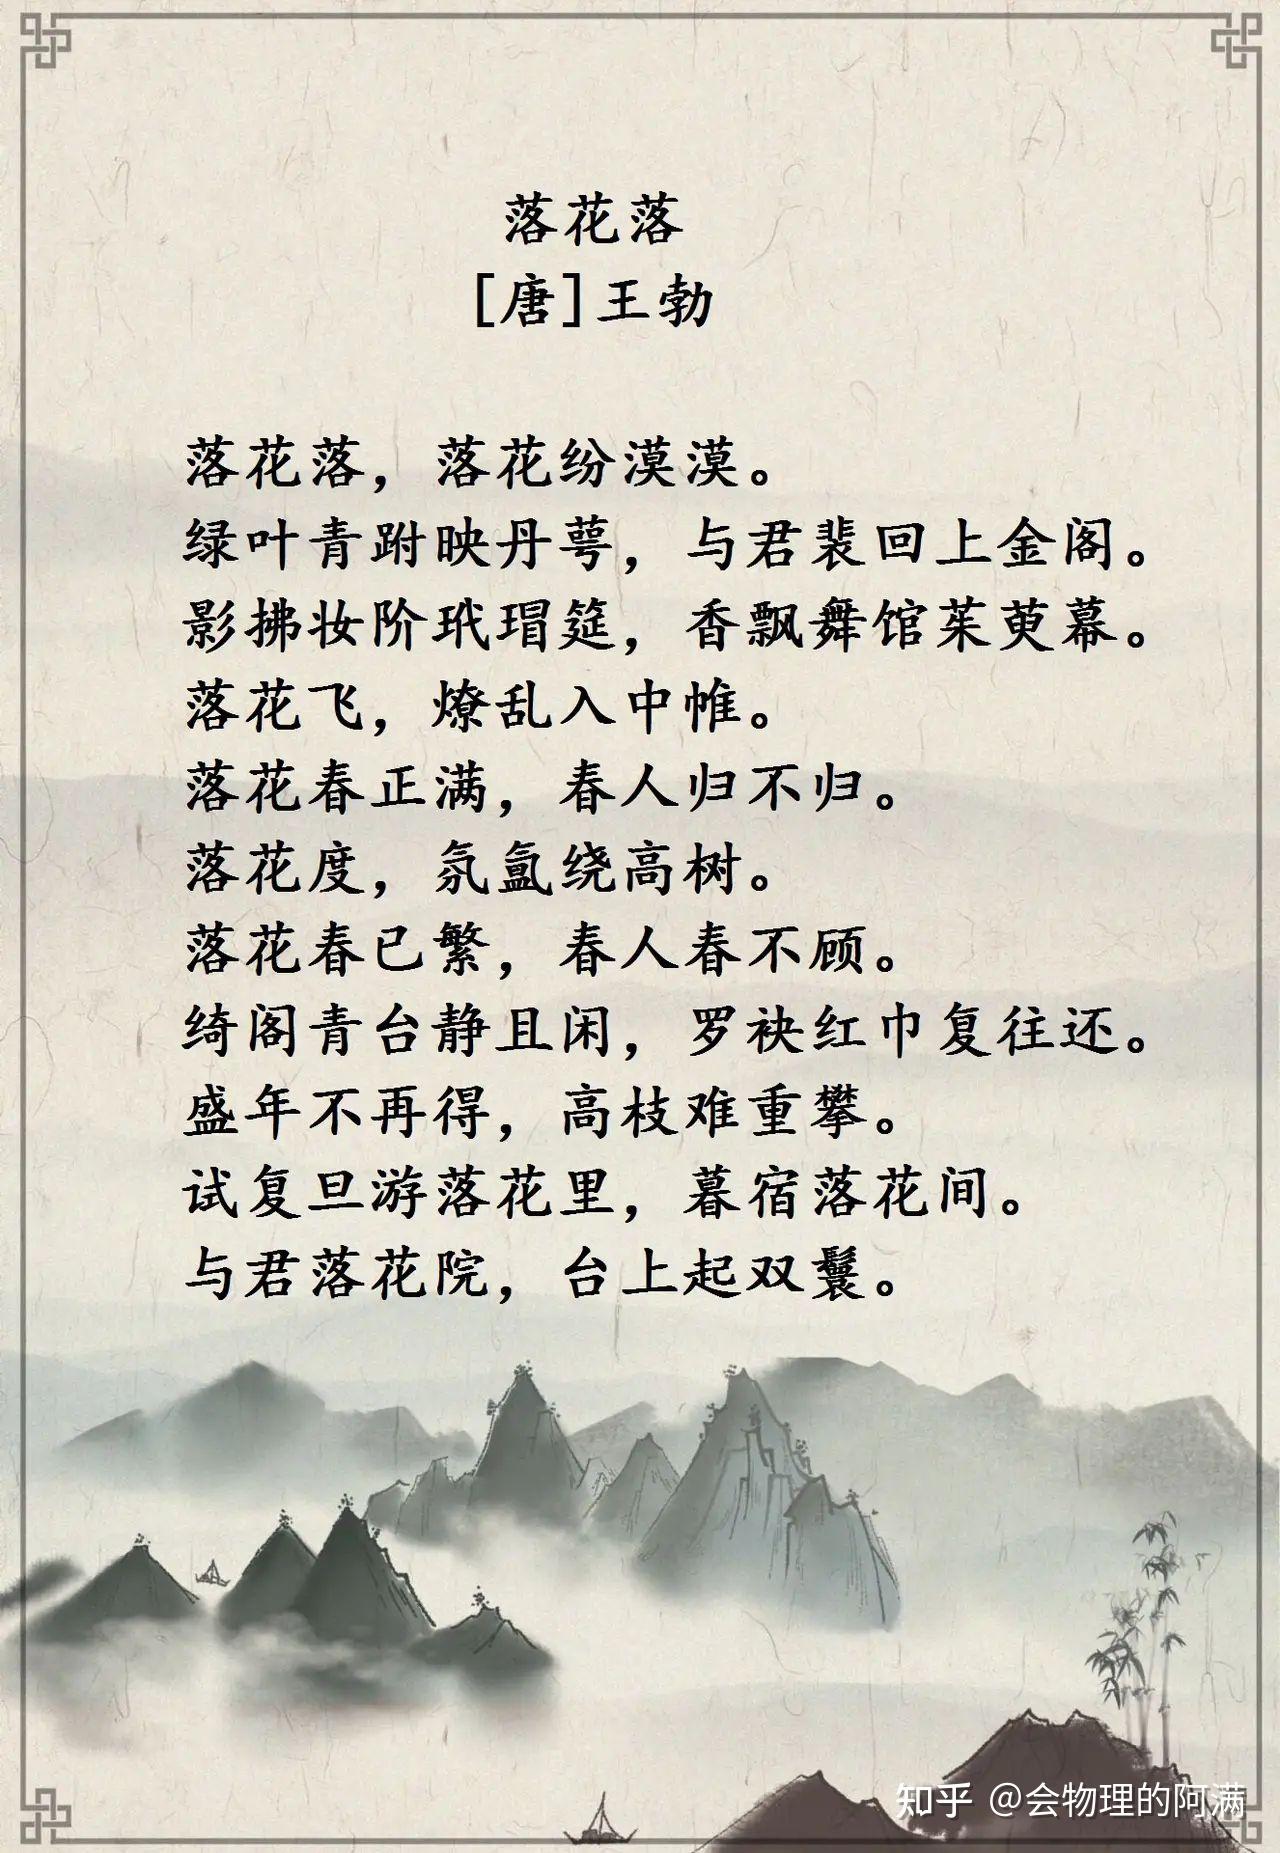 天纵英才王勃—诗9首 一篇《滕王阁序》冠绝古今,诗的造诣也非常高